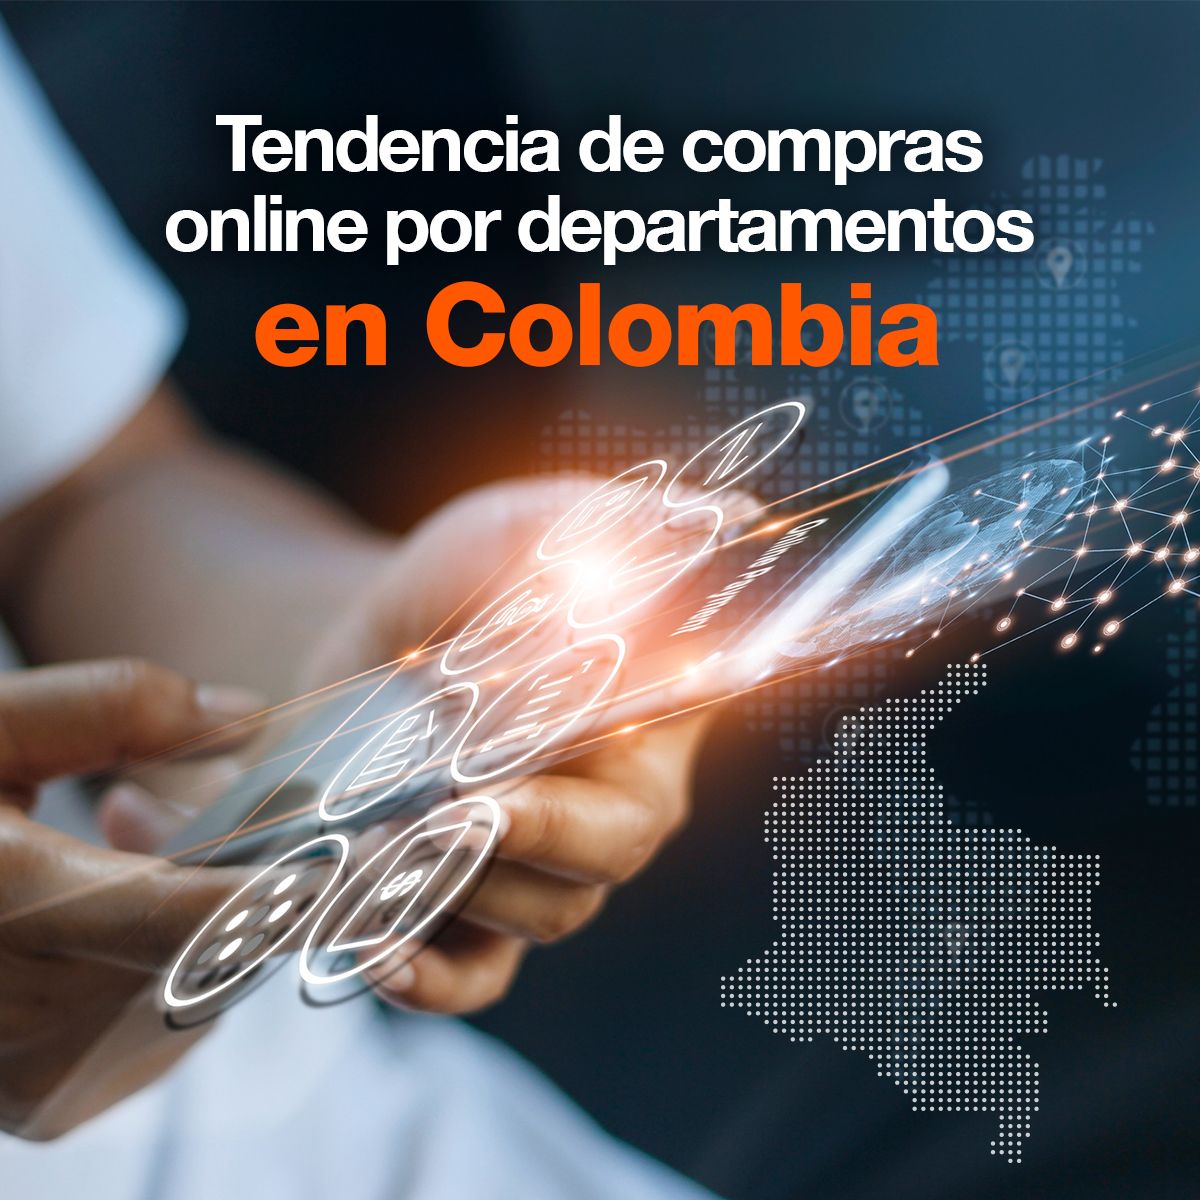 Tendencia de compras online por departamentos Colombiano